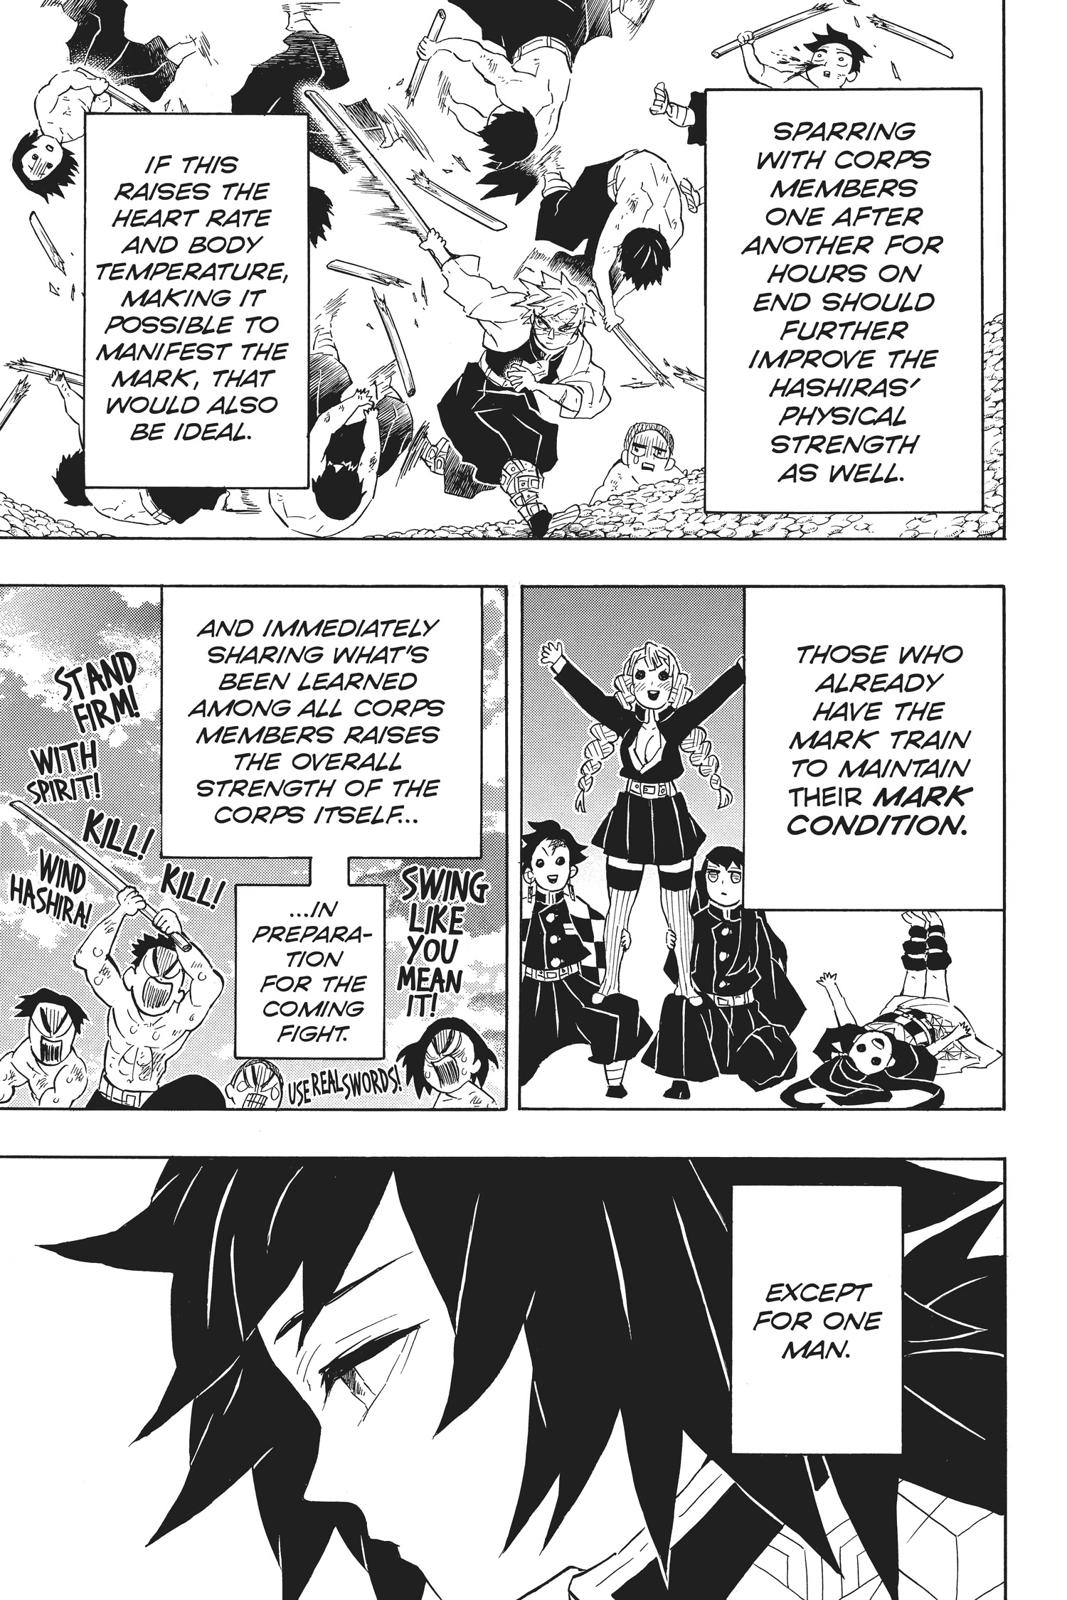 Demon Slayer Manga Manga Chapter - 130 - image 7